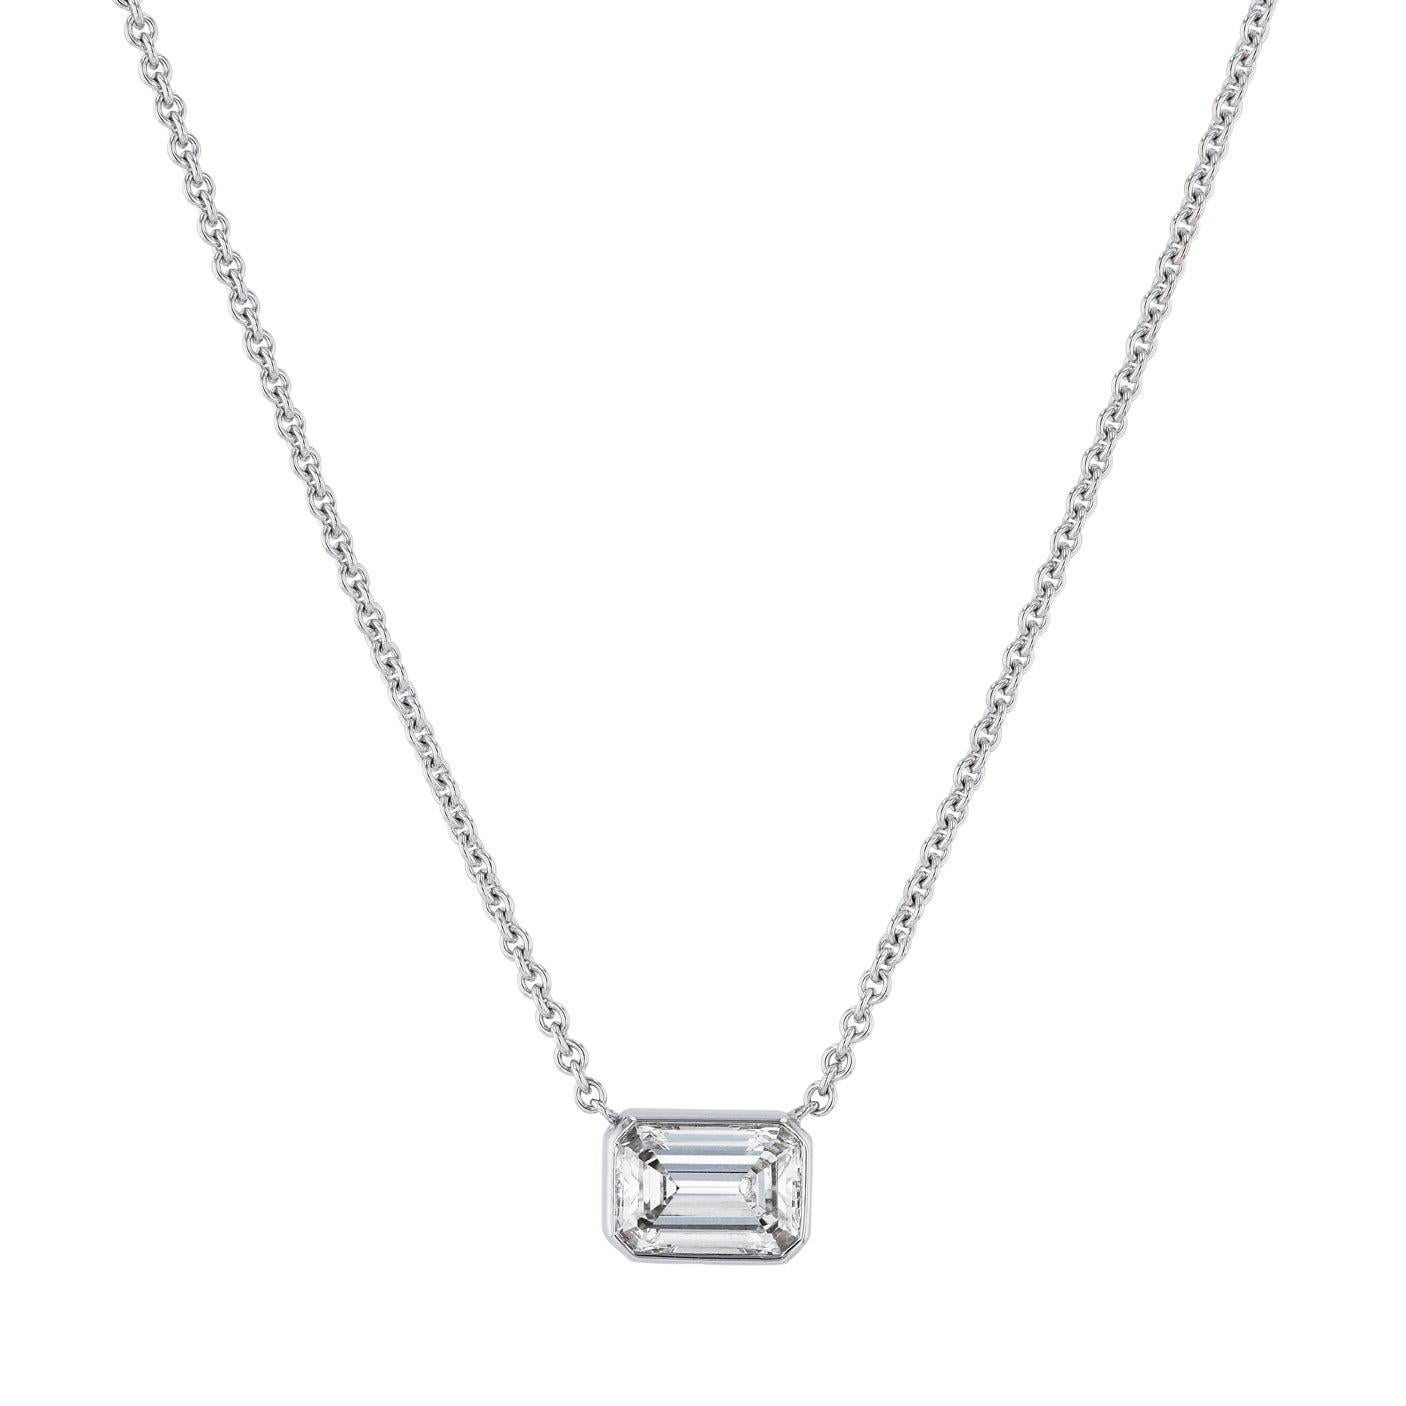 Emerald Cut Diamond White Gold Pendant Necklace In New Condition For Sale In Miami, FL